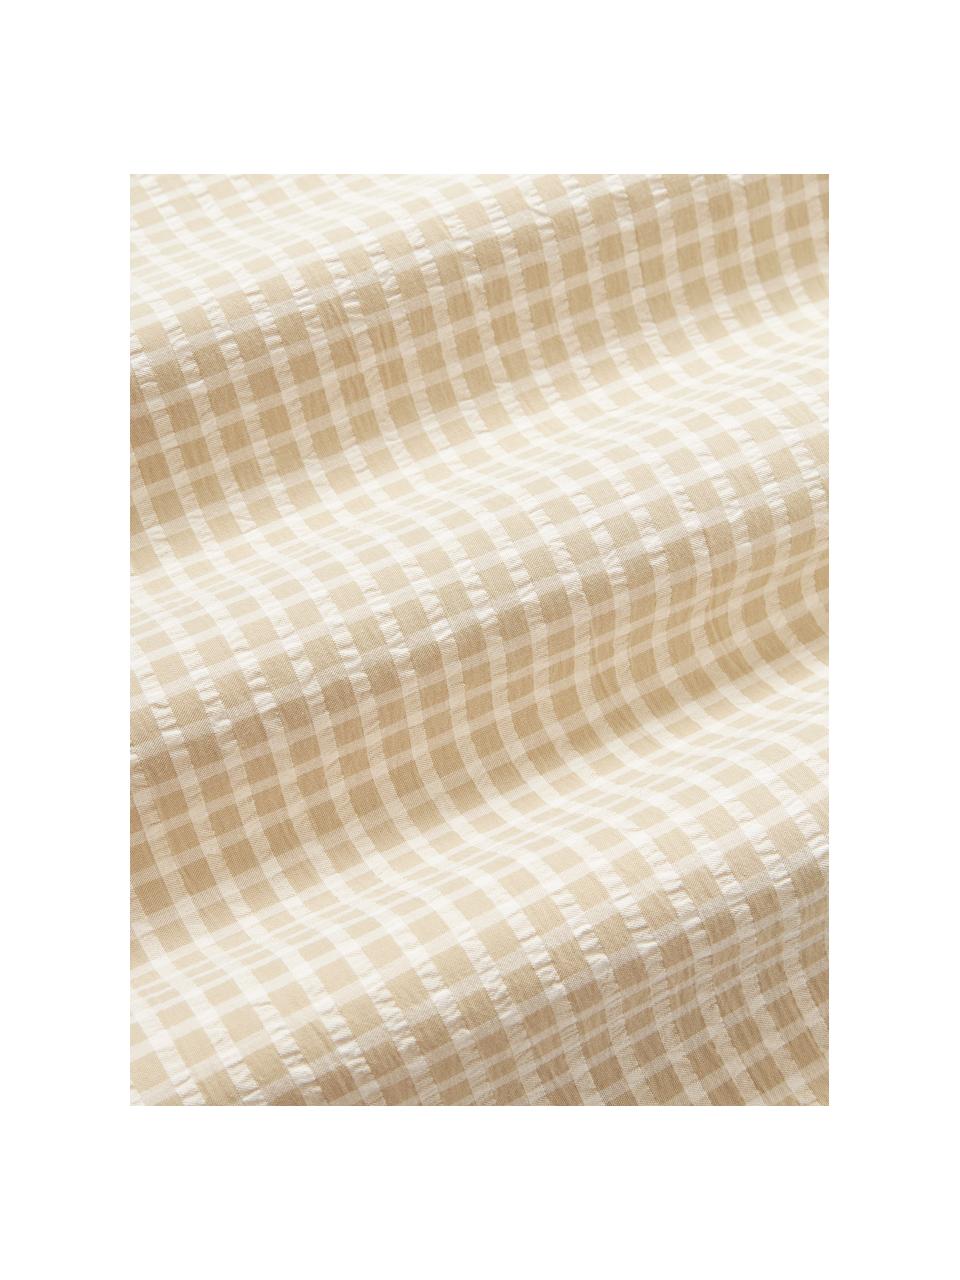 Drap de lit en coton seersucker à carreaux Davey, Beige, blanc, 240 x 280 cm